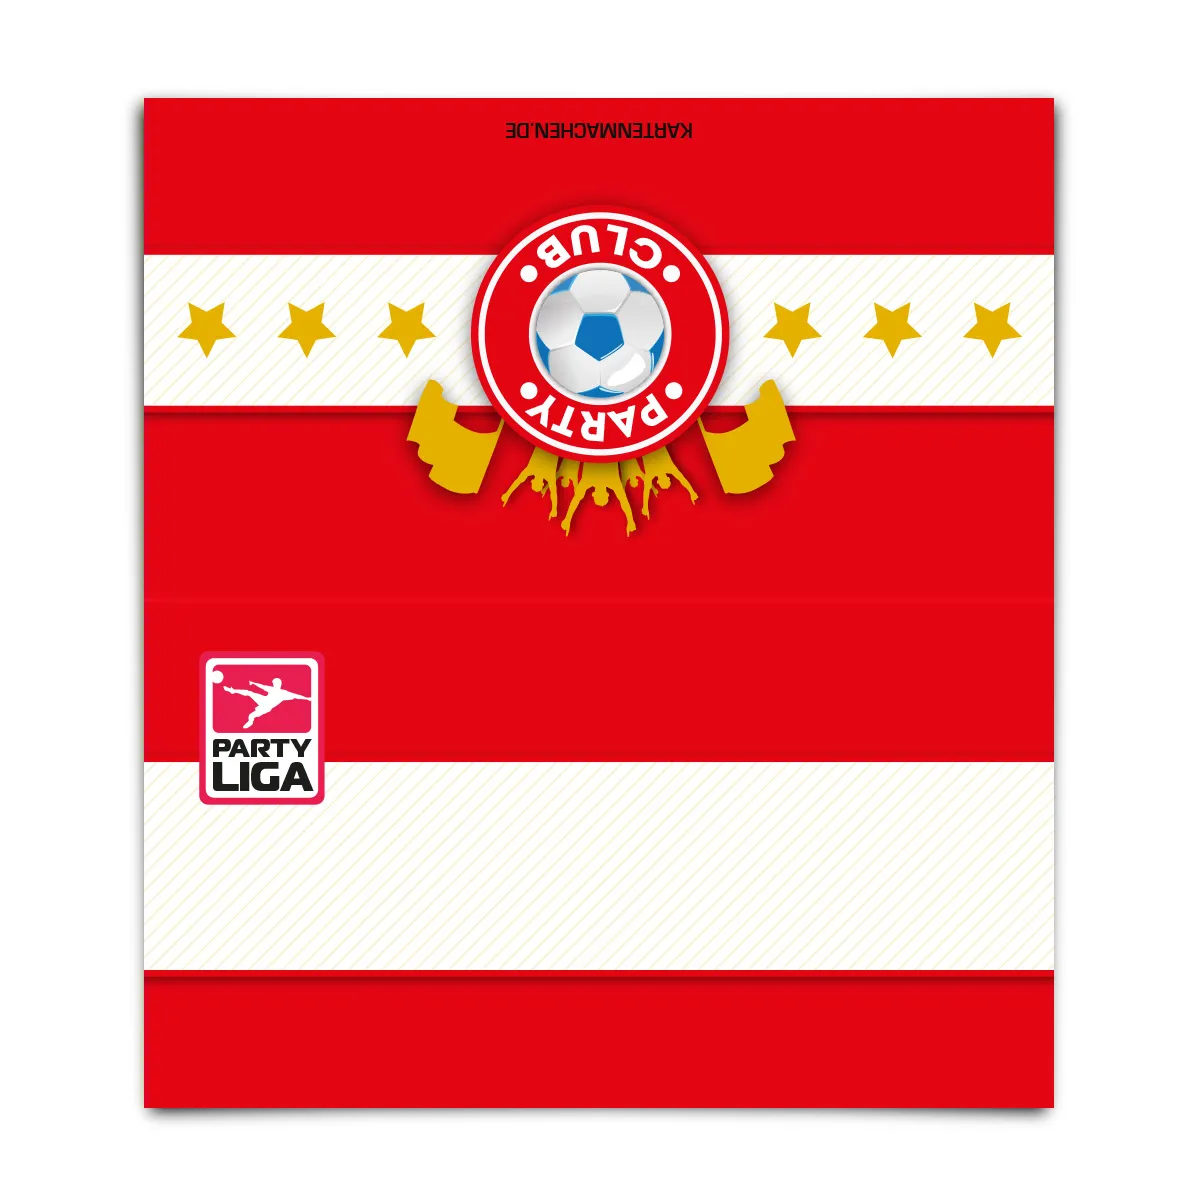 Blanko Platzkarten - Fussballticket Design in Rot